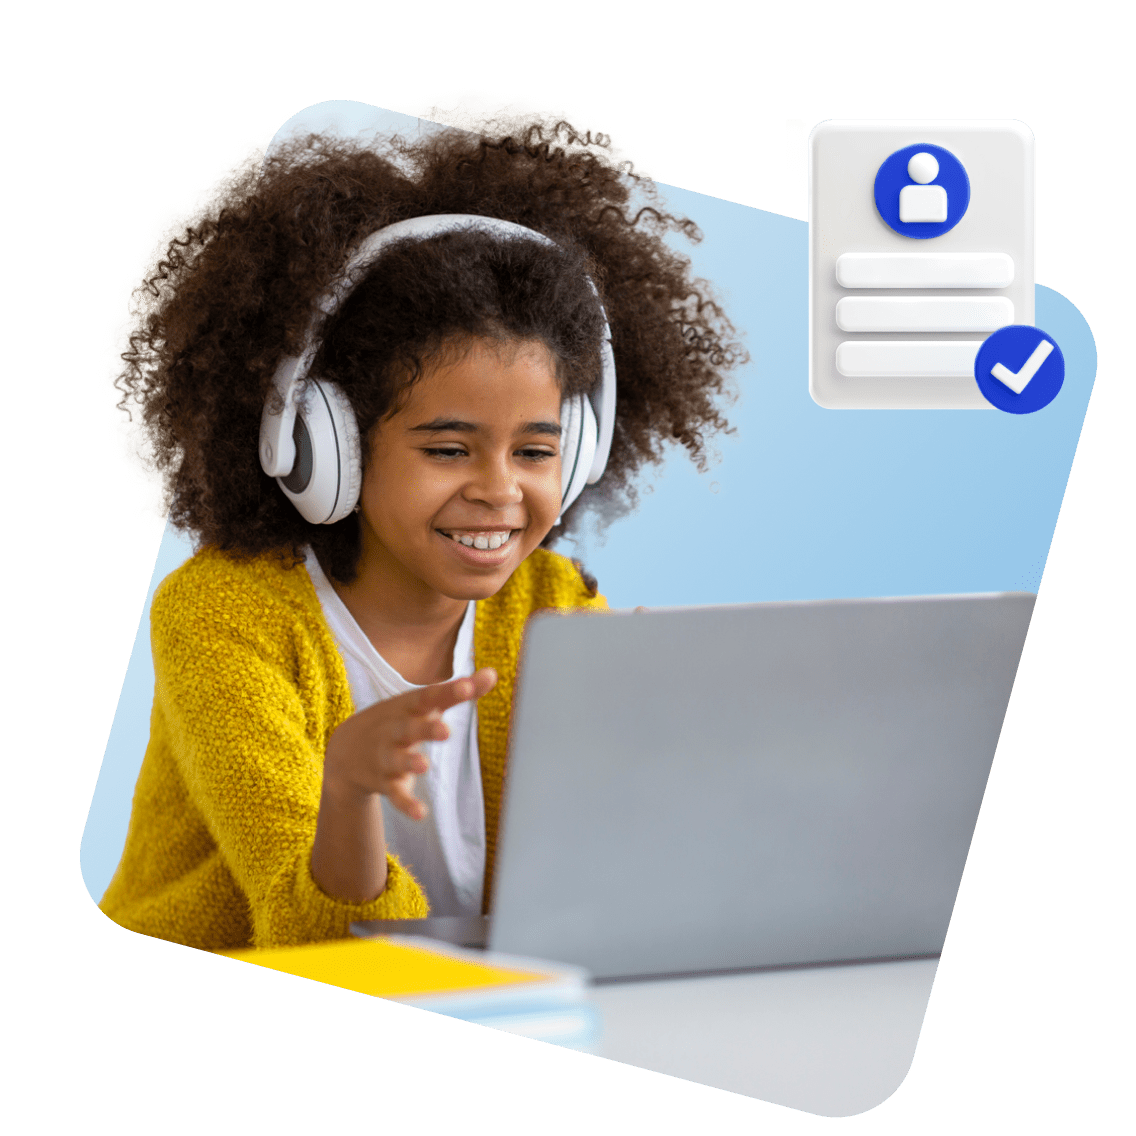 Louisiana Online Schools image 1 (name 3 Young Girl Laptop Headphones Certificate 1 1)